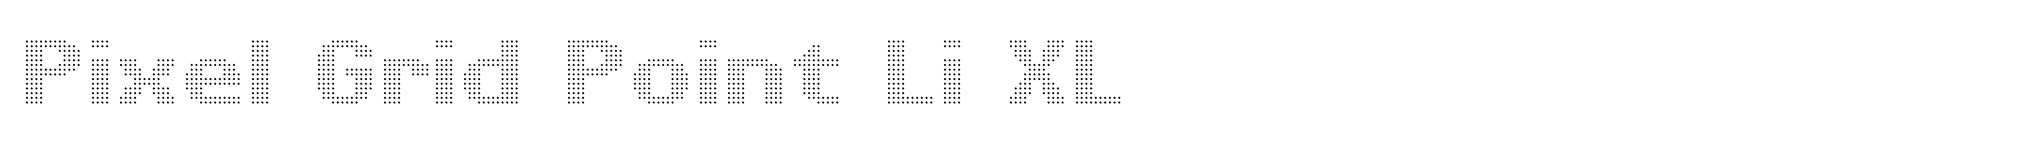 Pixel Grid Point Li XL image